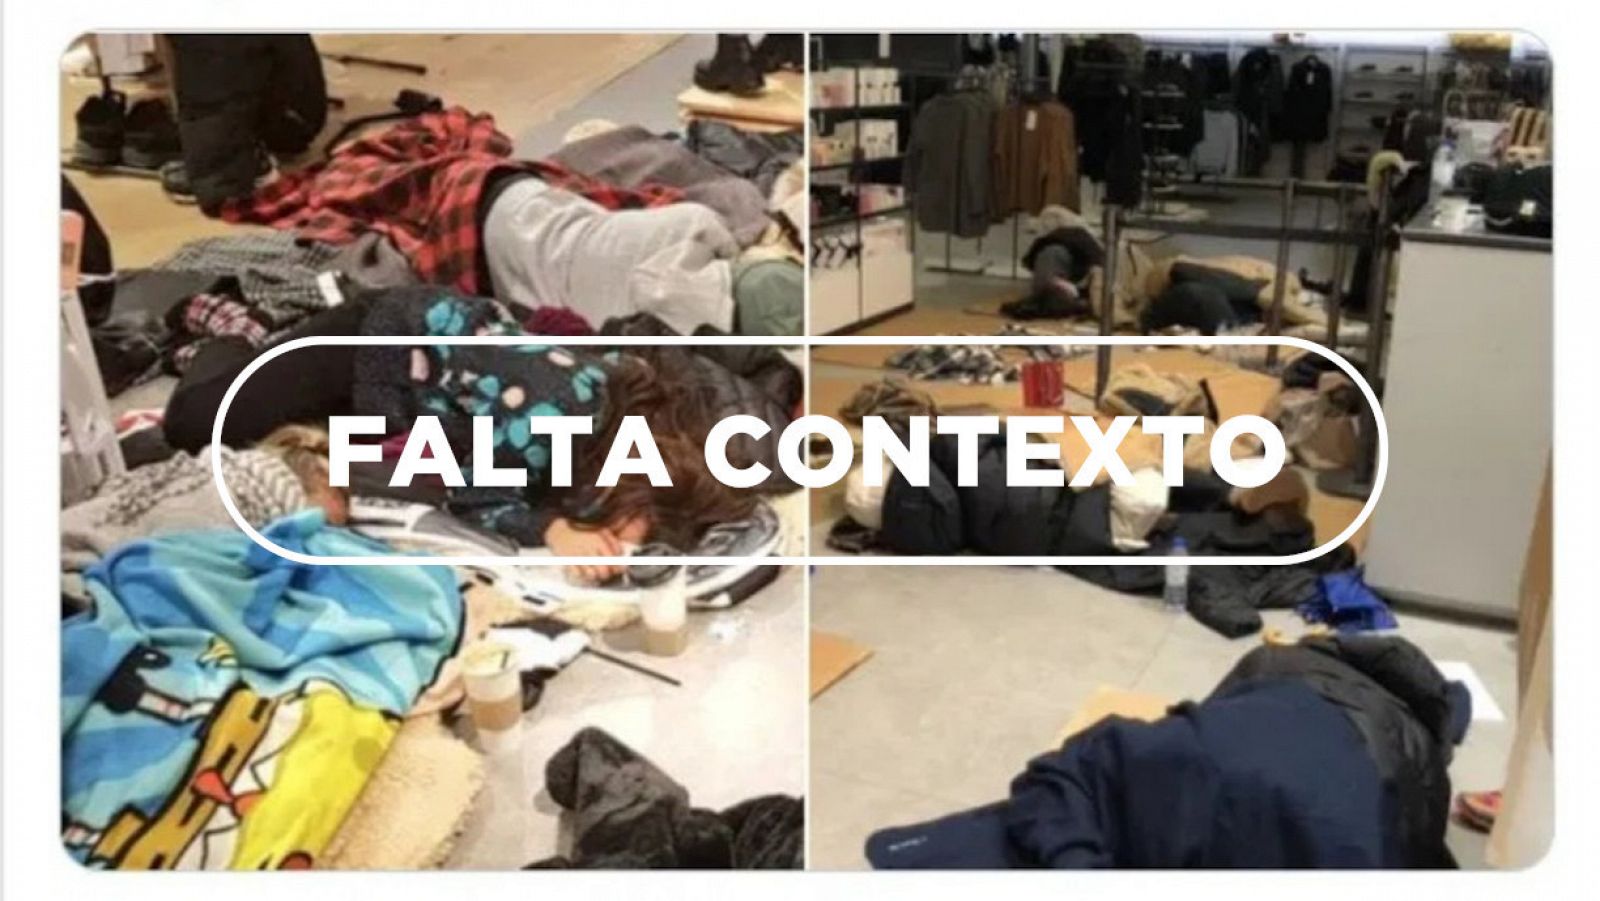 Empleados de Zara duermen sobre cartones en el suelo de la tienda con el sello de Falta contexto.